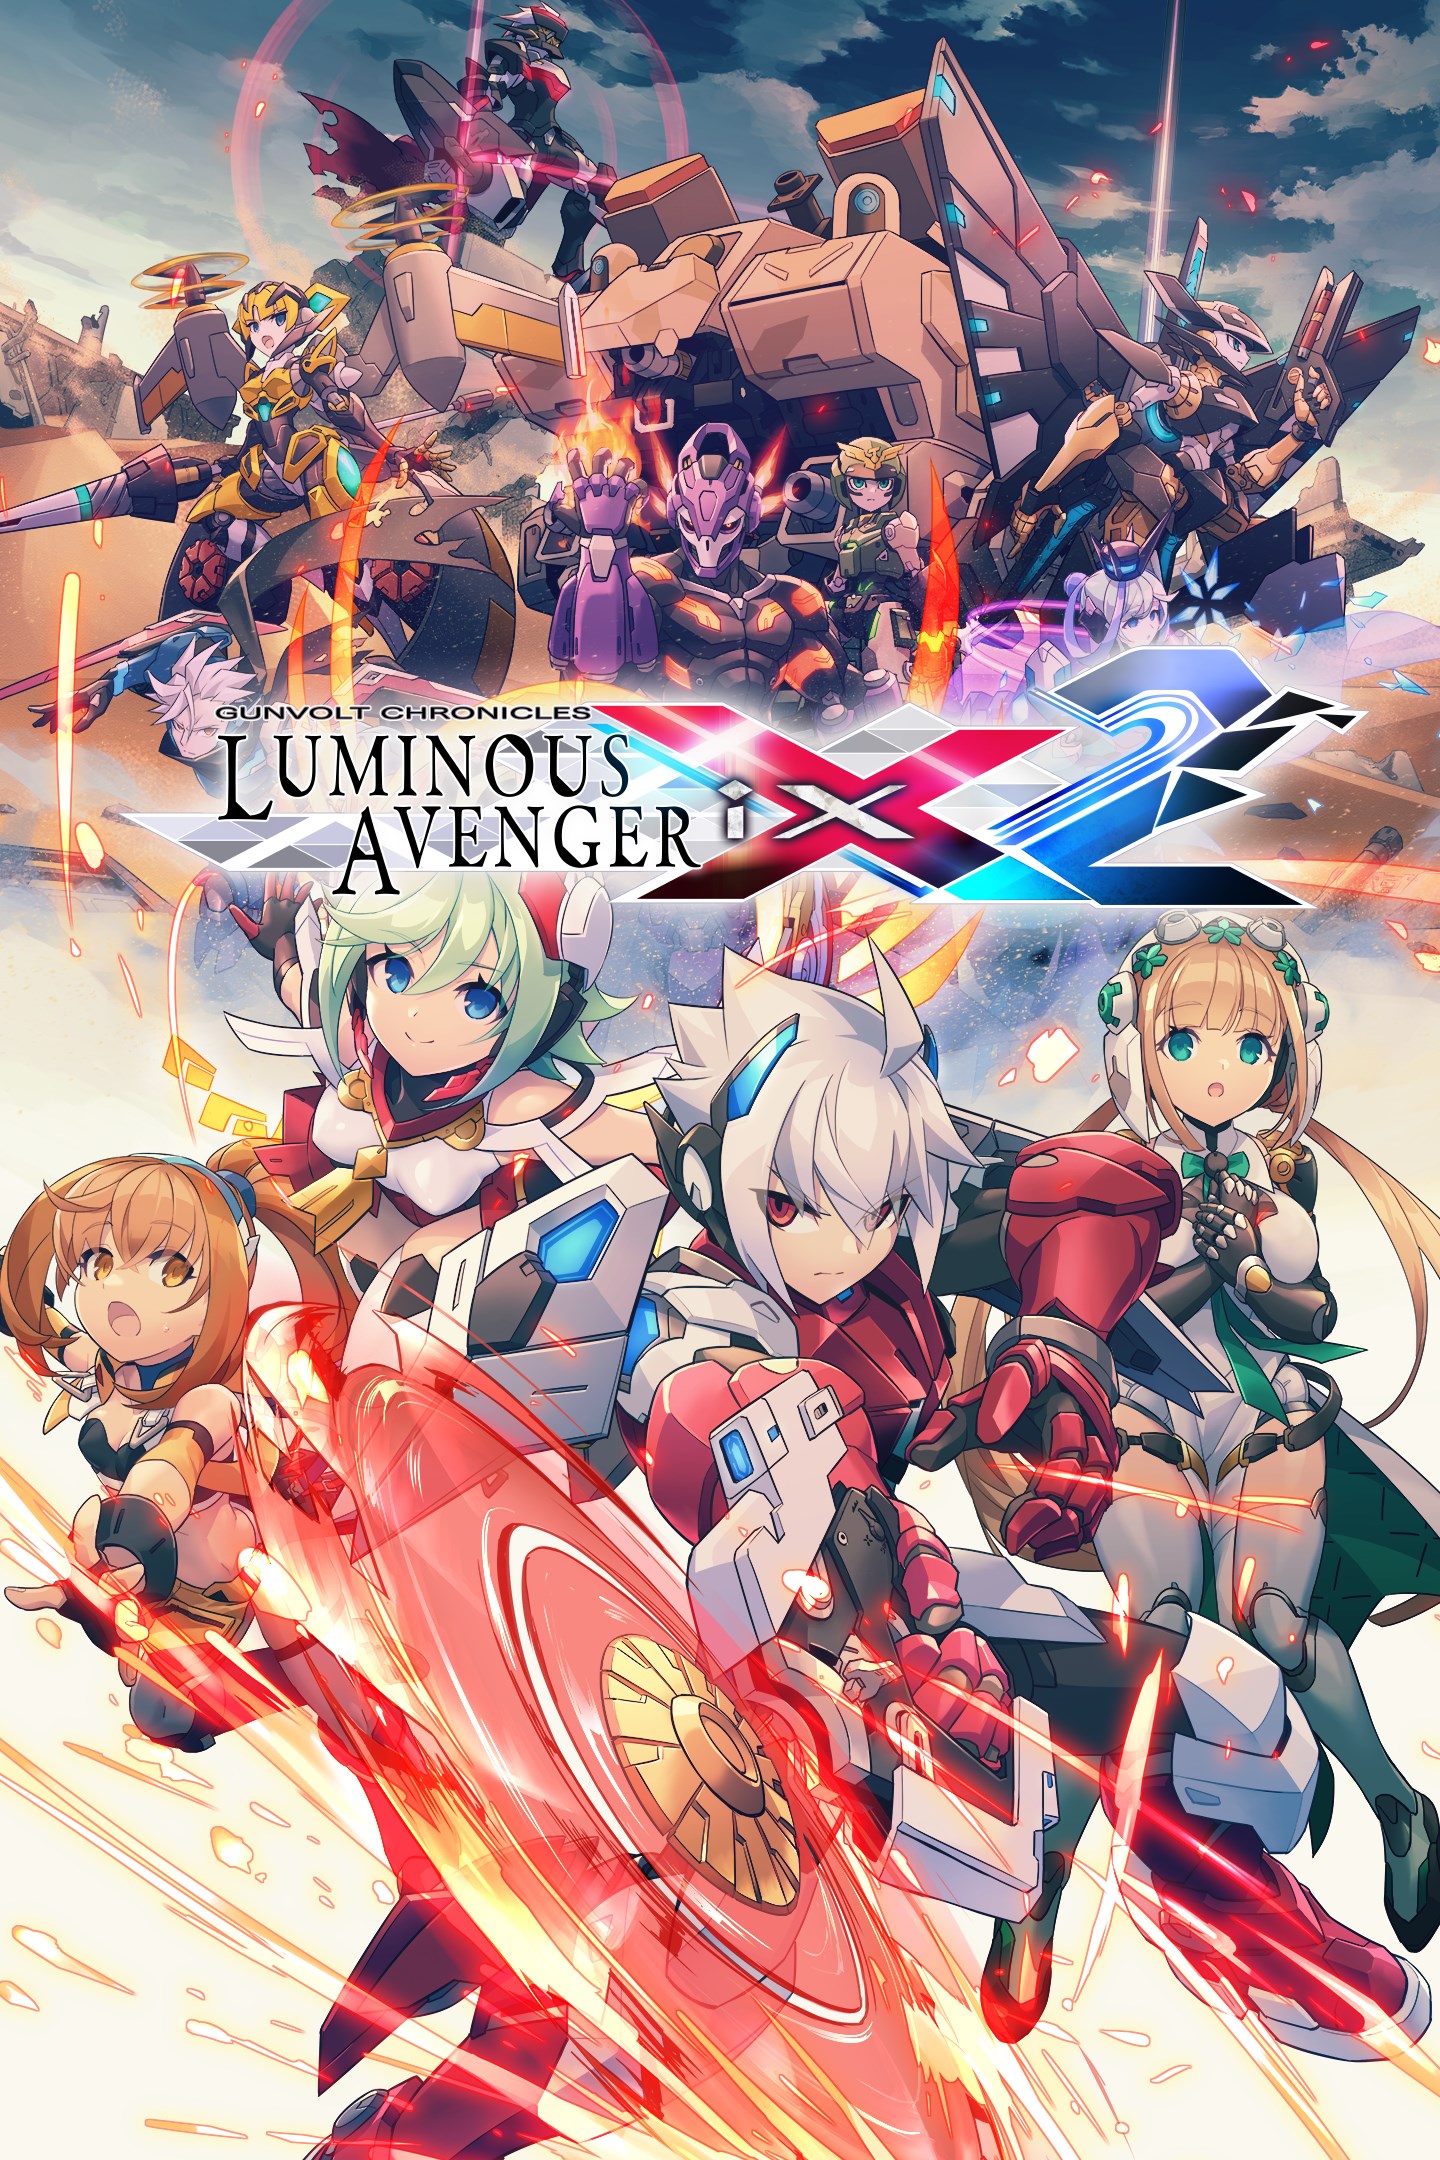 Gunvolt Chronicles: Luminous Avenger iX 2 boxshot